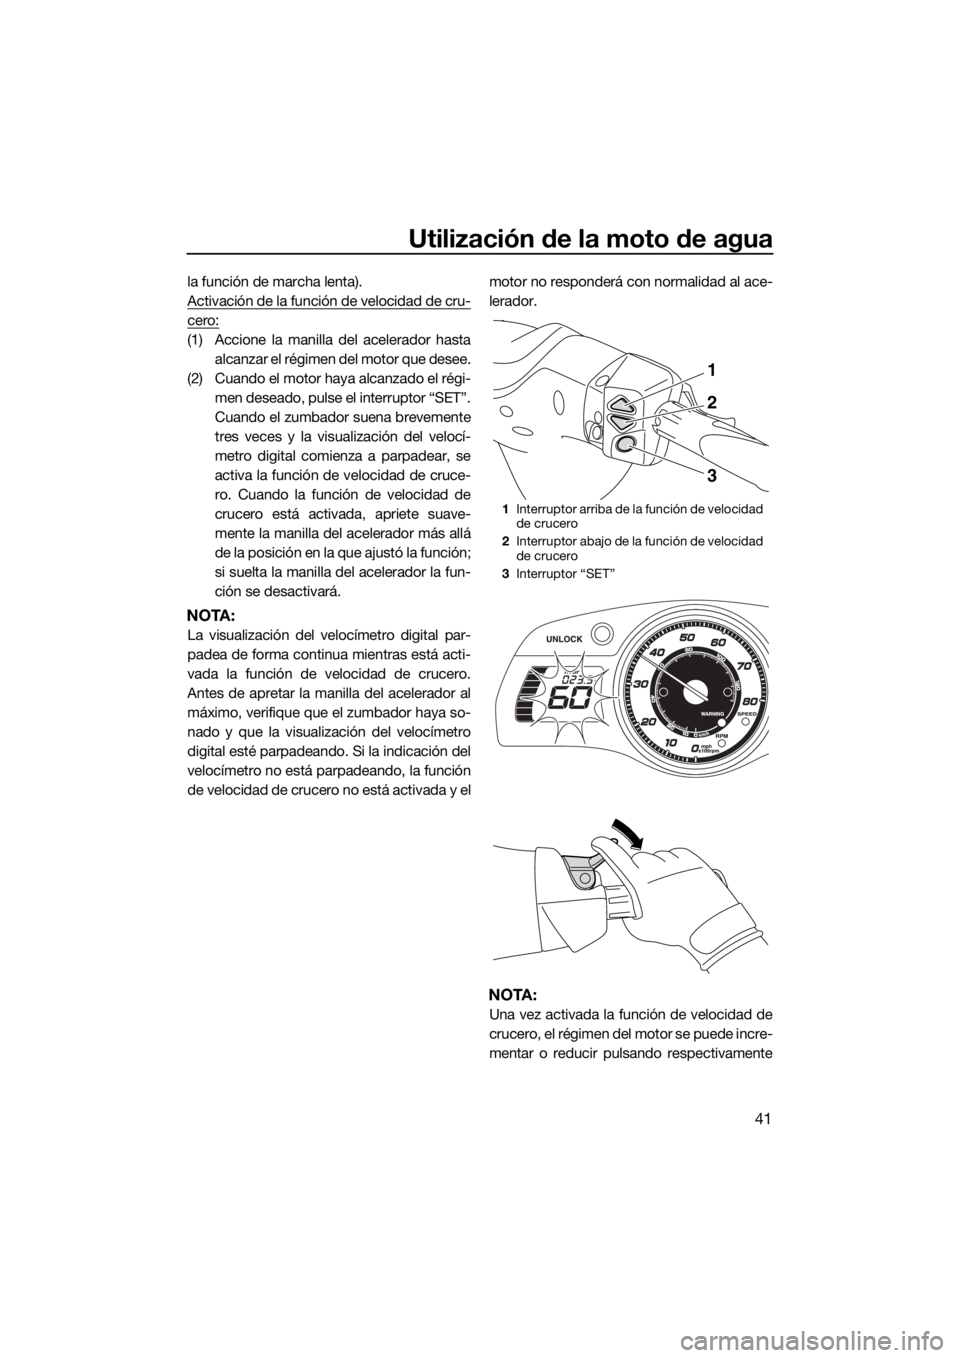 YAMAHA FX HO CRUISER 2015  Manuale de Empleo (in Spanish) Utilización de la moto de agua
41
la función de marcha lenta).
Activación de la función de velocidad de cru-
cero:
(1) Accione la manilla del acelerador hasta
alcanzar el régimen del motor que de